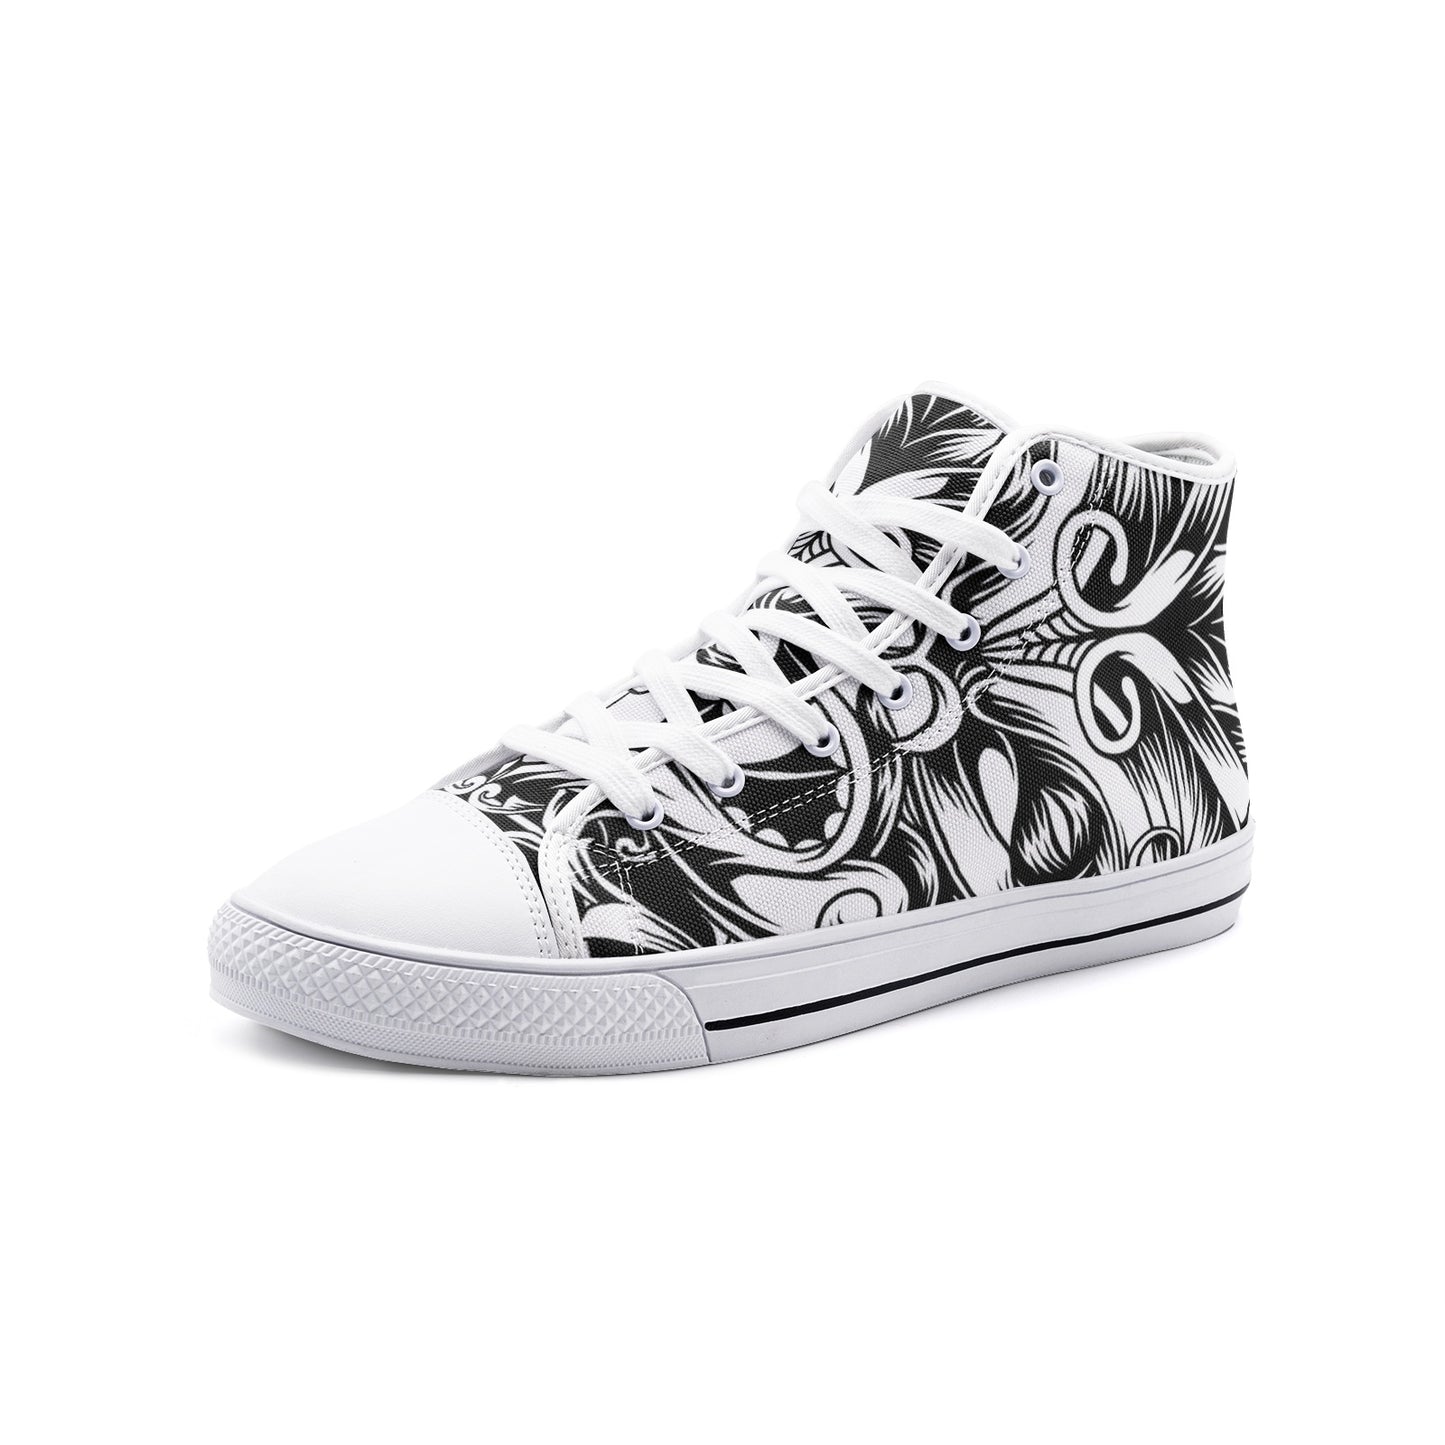 Maori Black & White  Unisex High-Top Canvas Shoes DromedarShop.com Online Boutique